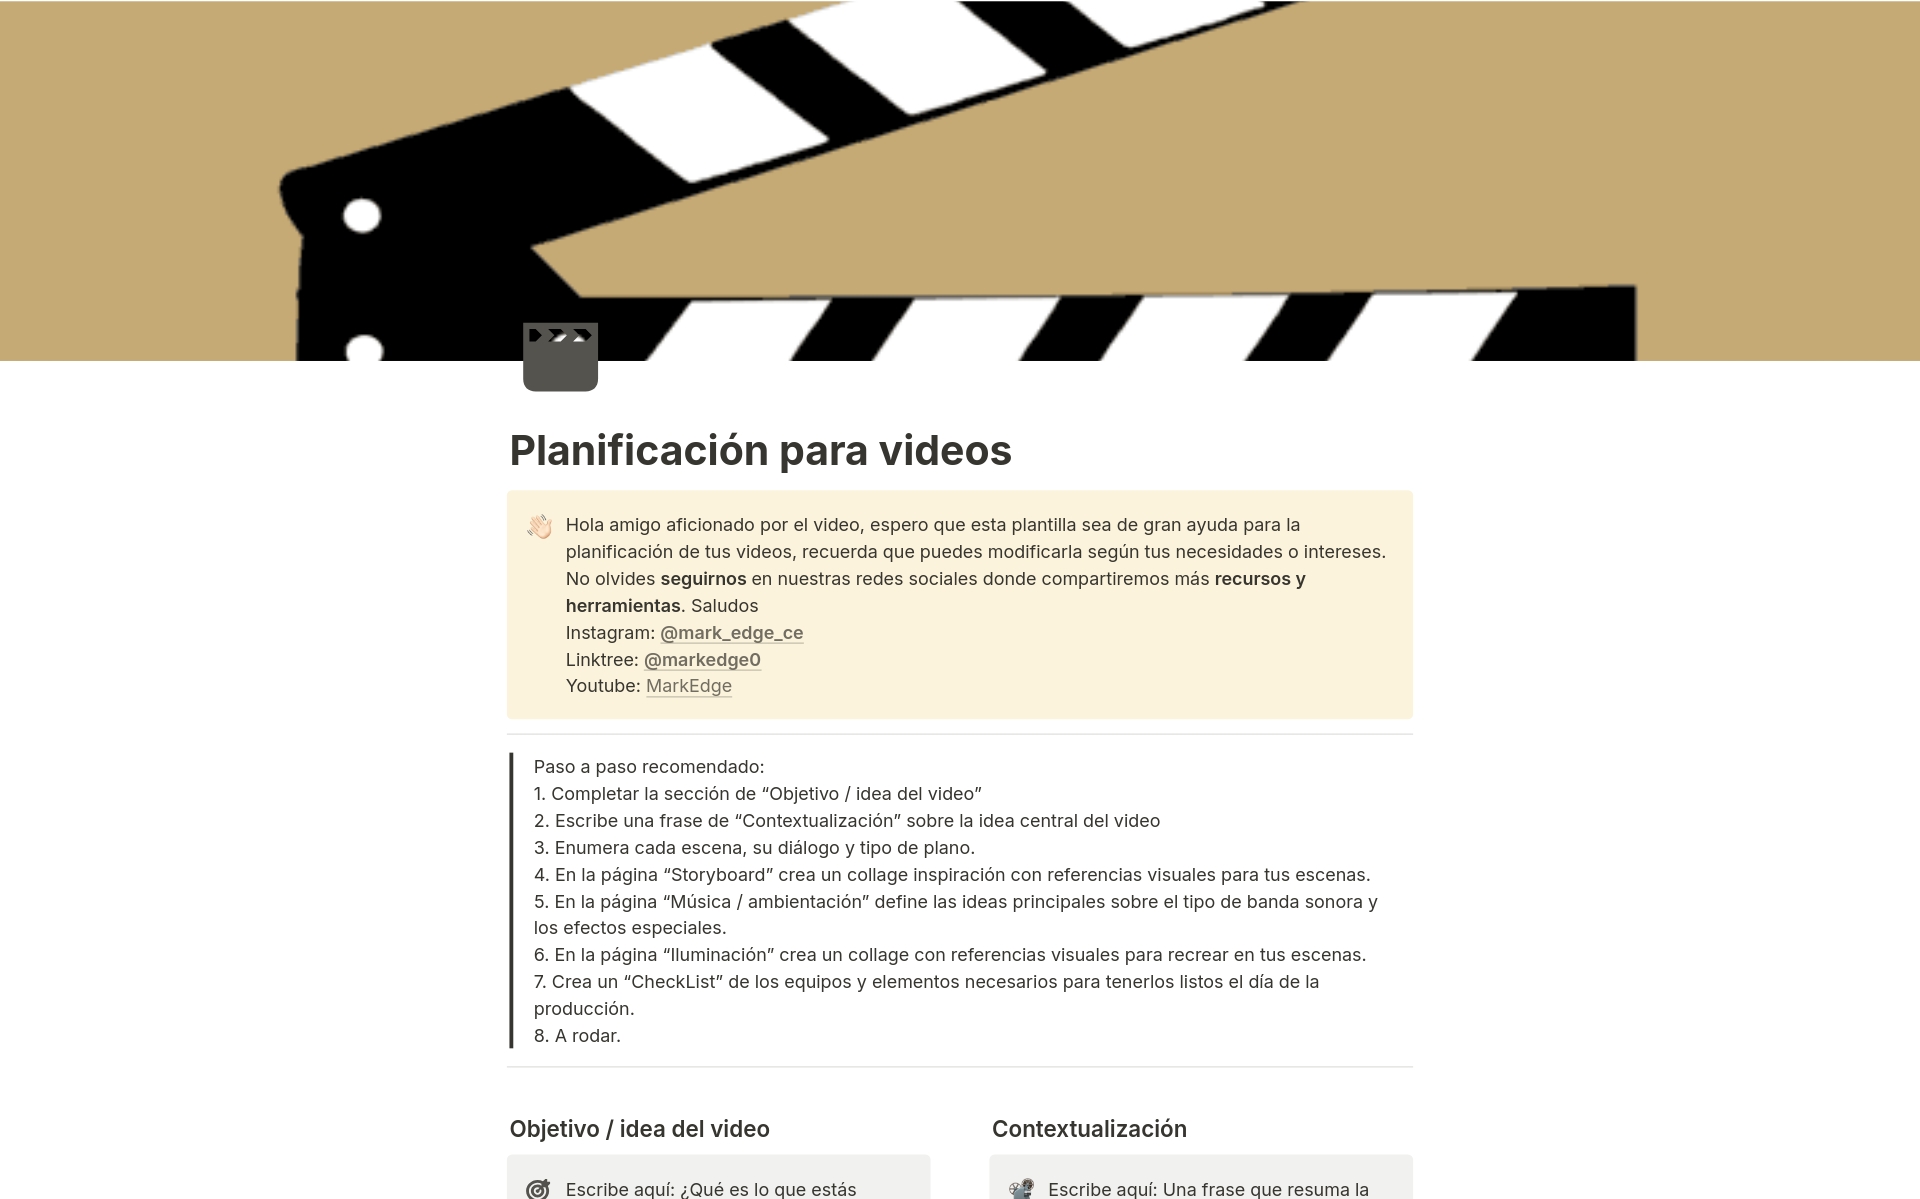 A template preview for Planificación para videos